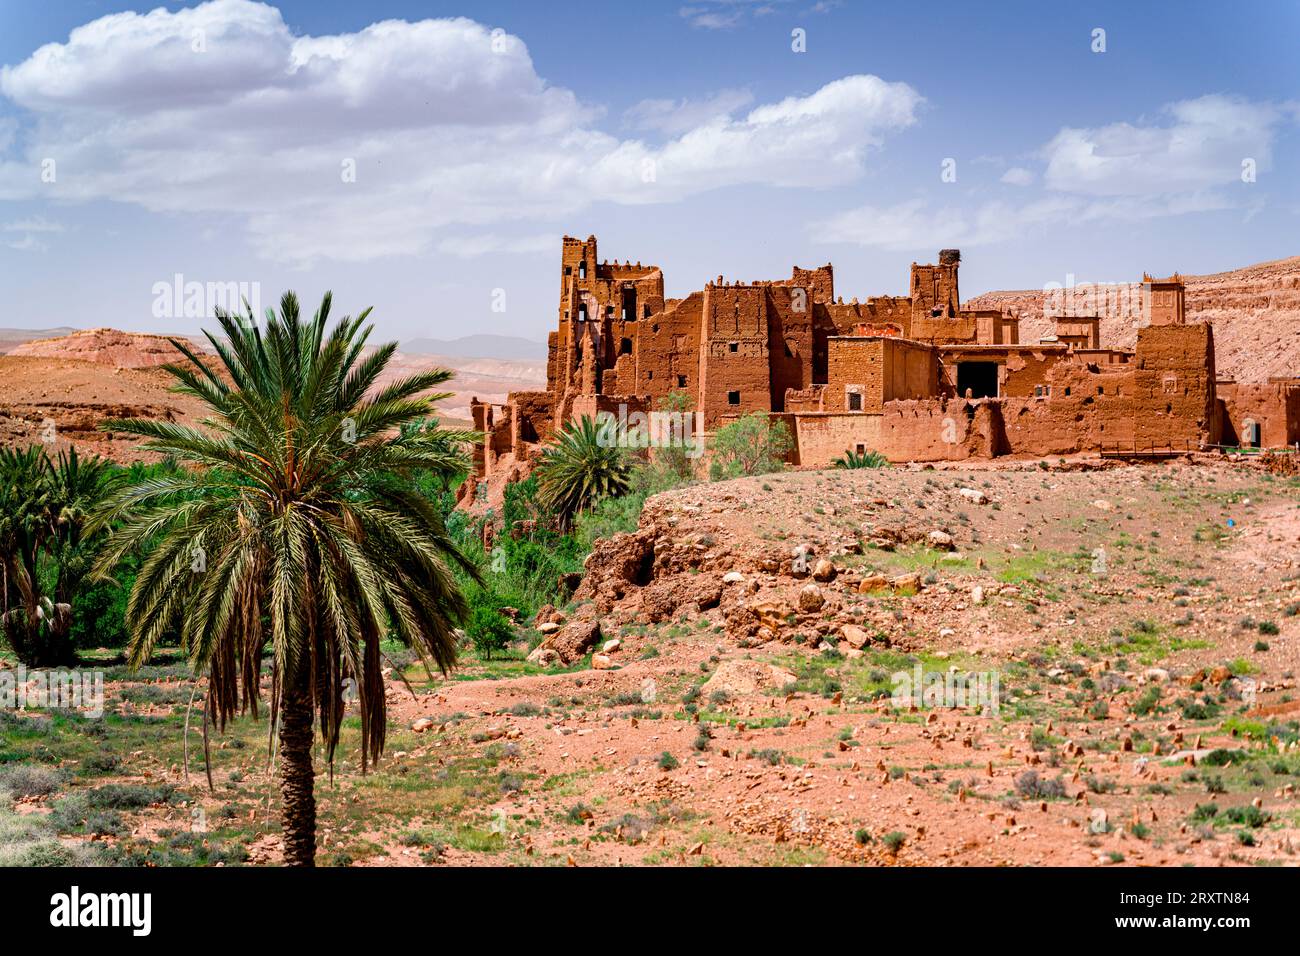 Ancienne kasbah entourée de palmiers, vallée d'Ounila, montagnes de l'Atlas, province de Ouarzazate, Maroc, Afrique du Nord, Afrique Banque D'Images